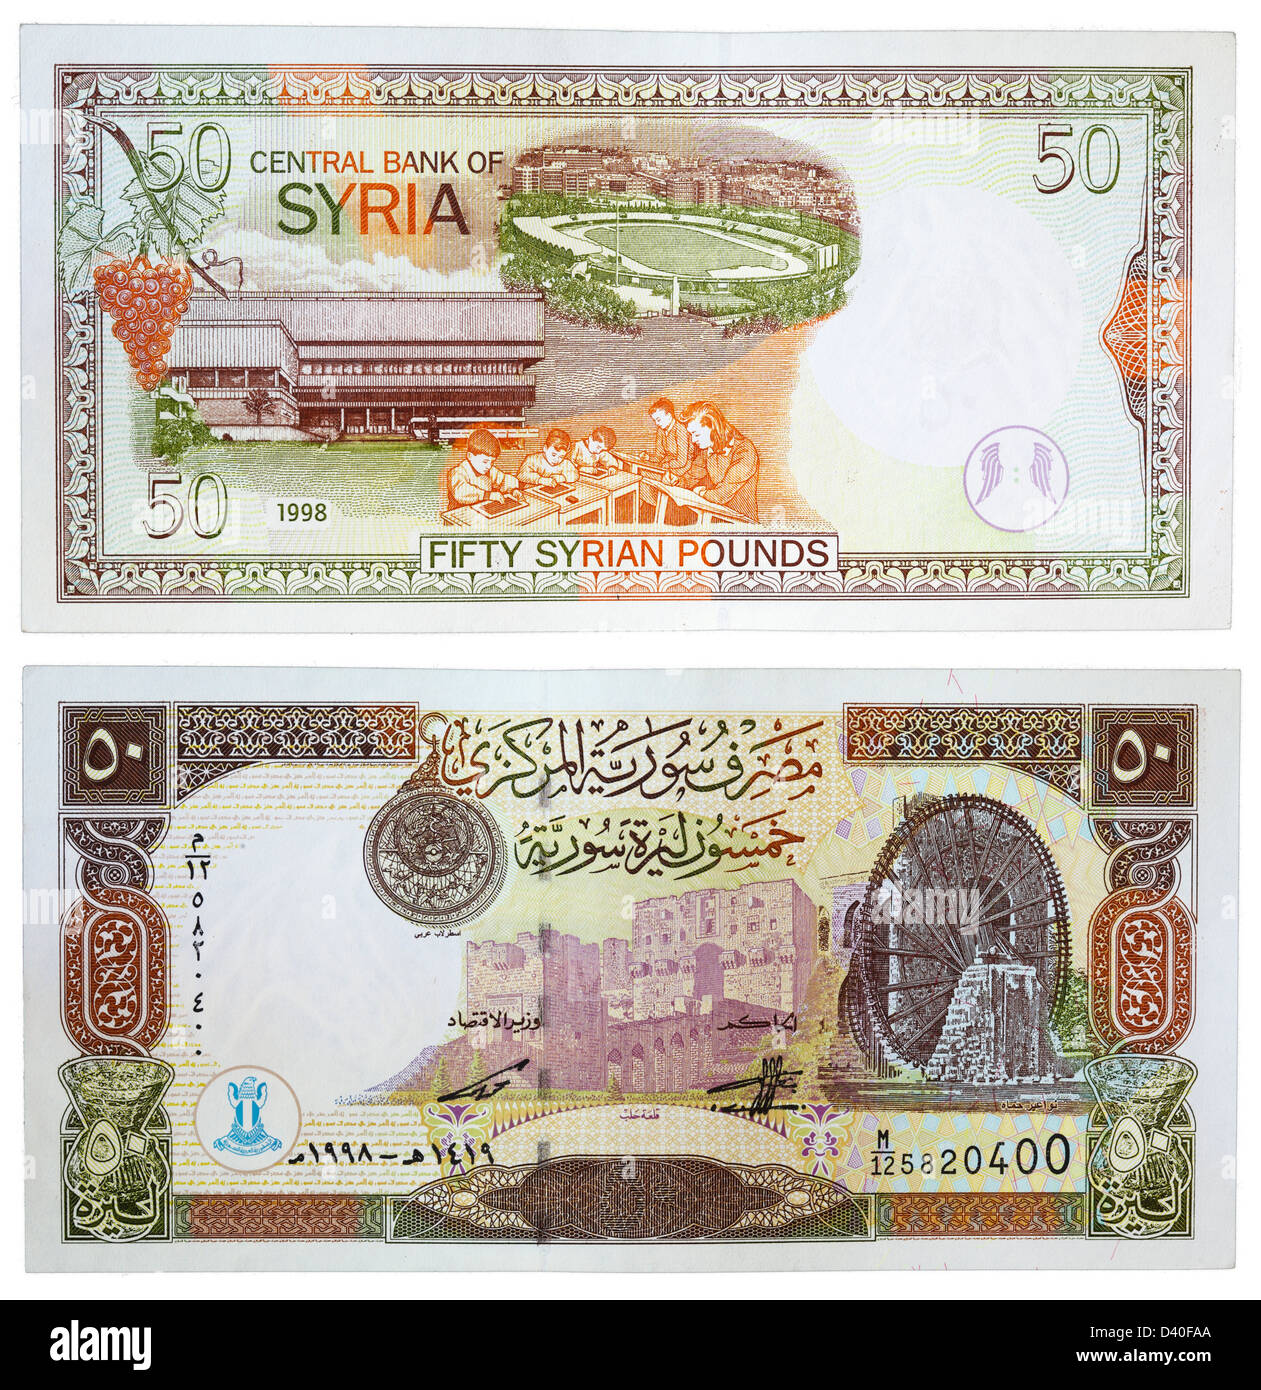 50-Pfund-Banknote, Aleppo Zitadelle, Wasserrad von Hama und Al-Assad Bibliothek, Abbyssian Stadion und Studenten, Syrien, 1998 Stockfoto